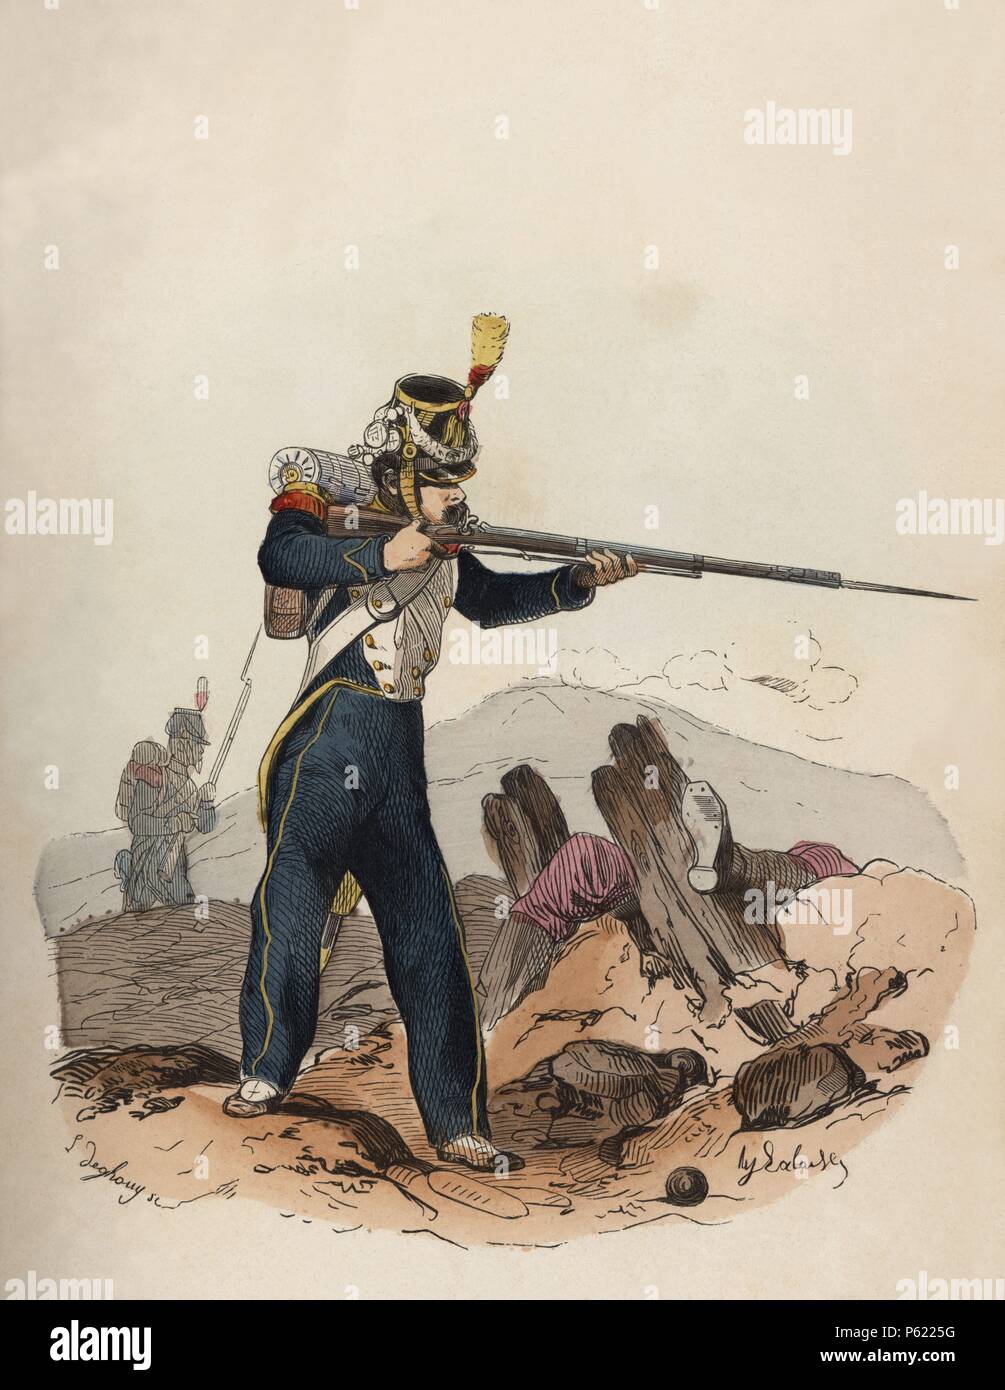 Francia. Siglo XIX. Uniforme de Infantería ligera de la guardia imperial, año 1854. Grabado de 1864. Stock Photo